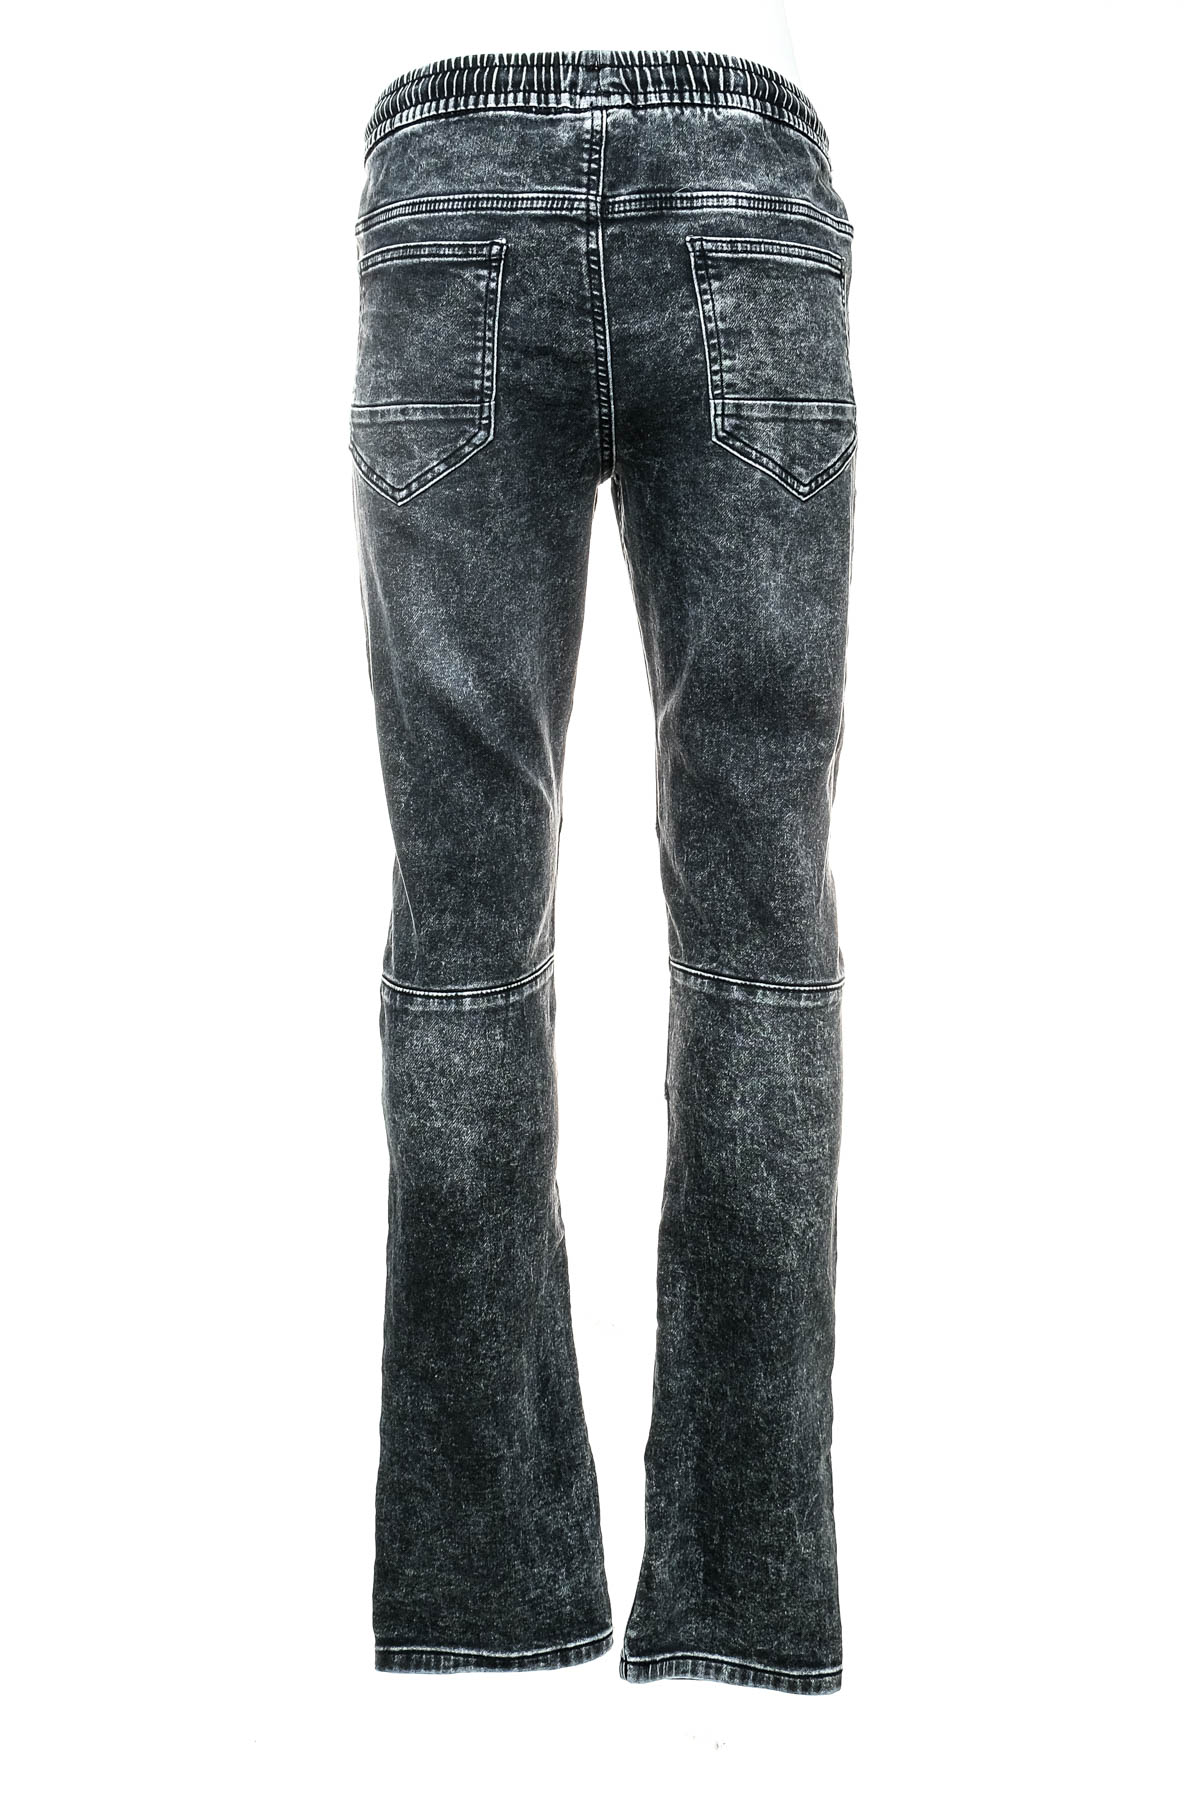 Boy jeans - C&A - 1